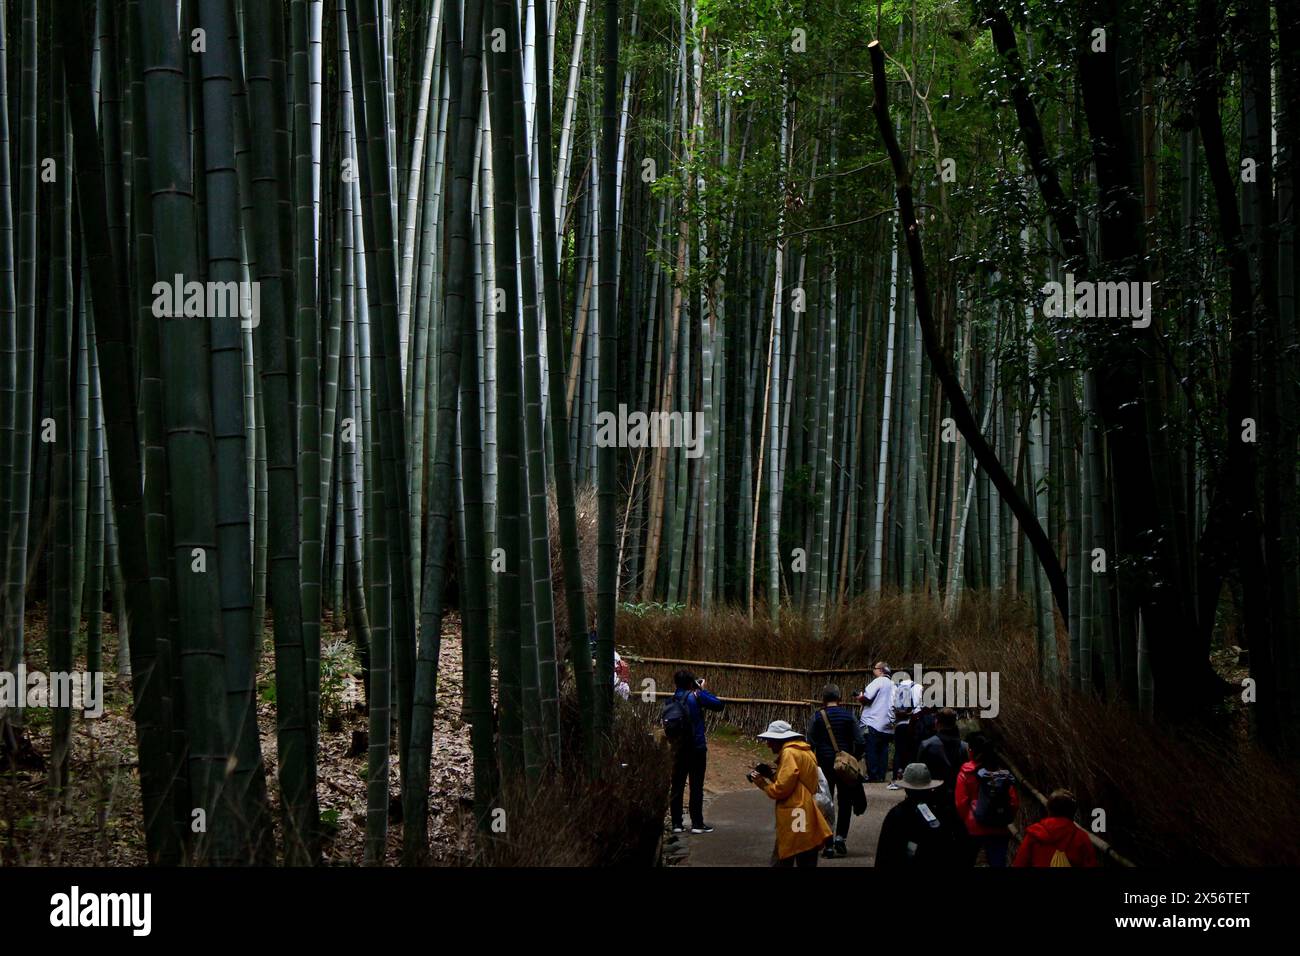 Vie quotidienne au Japon Un chemin de forêt de bambous à Arashiyama, Kyoto, visité par des touristes étrangers Banque D'Images